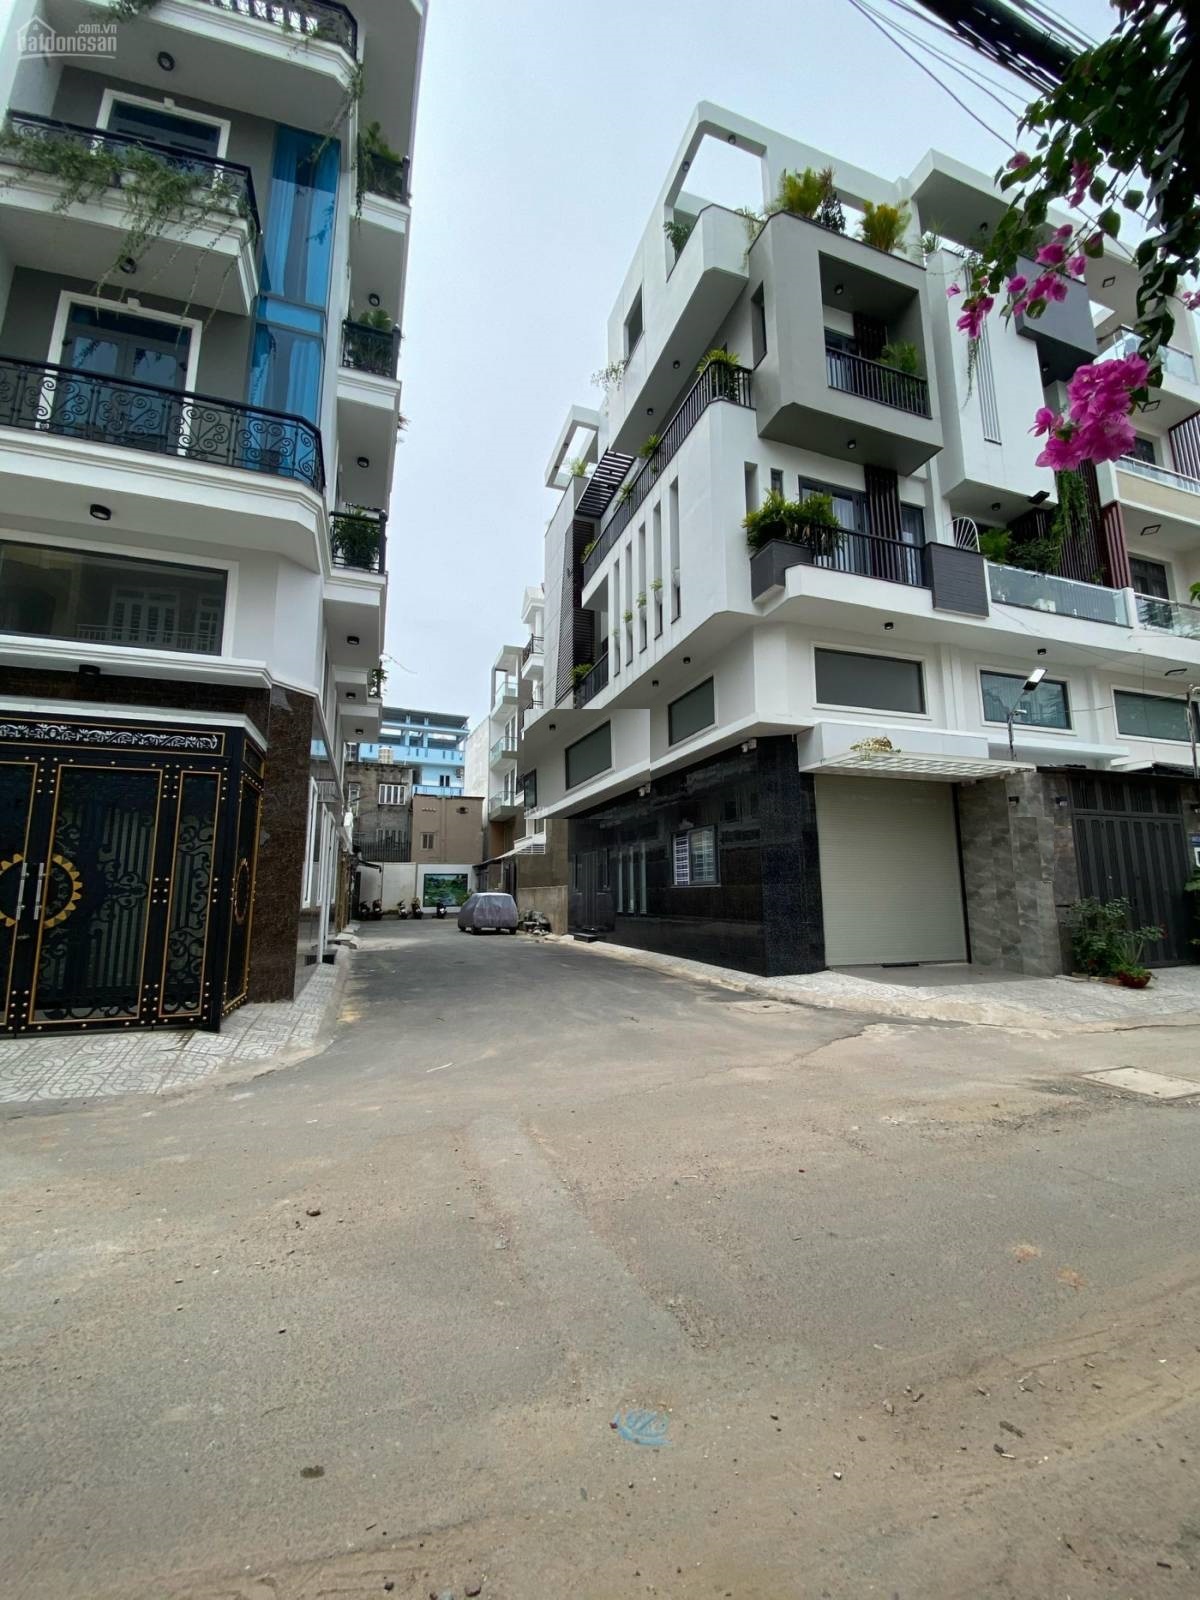  Bán nhà HXH đường Quang Trung, phường 10, Q. Gò Vấp, DT 57m2, lửng, 2 lầu, ST.